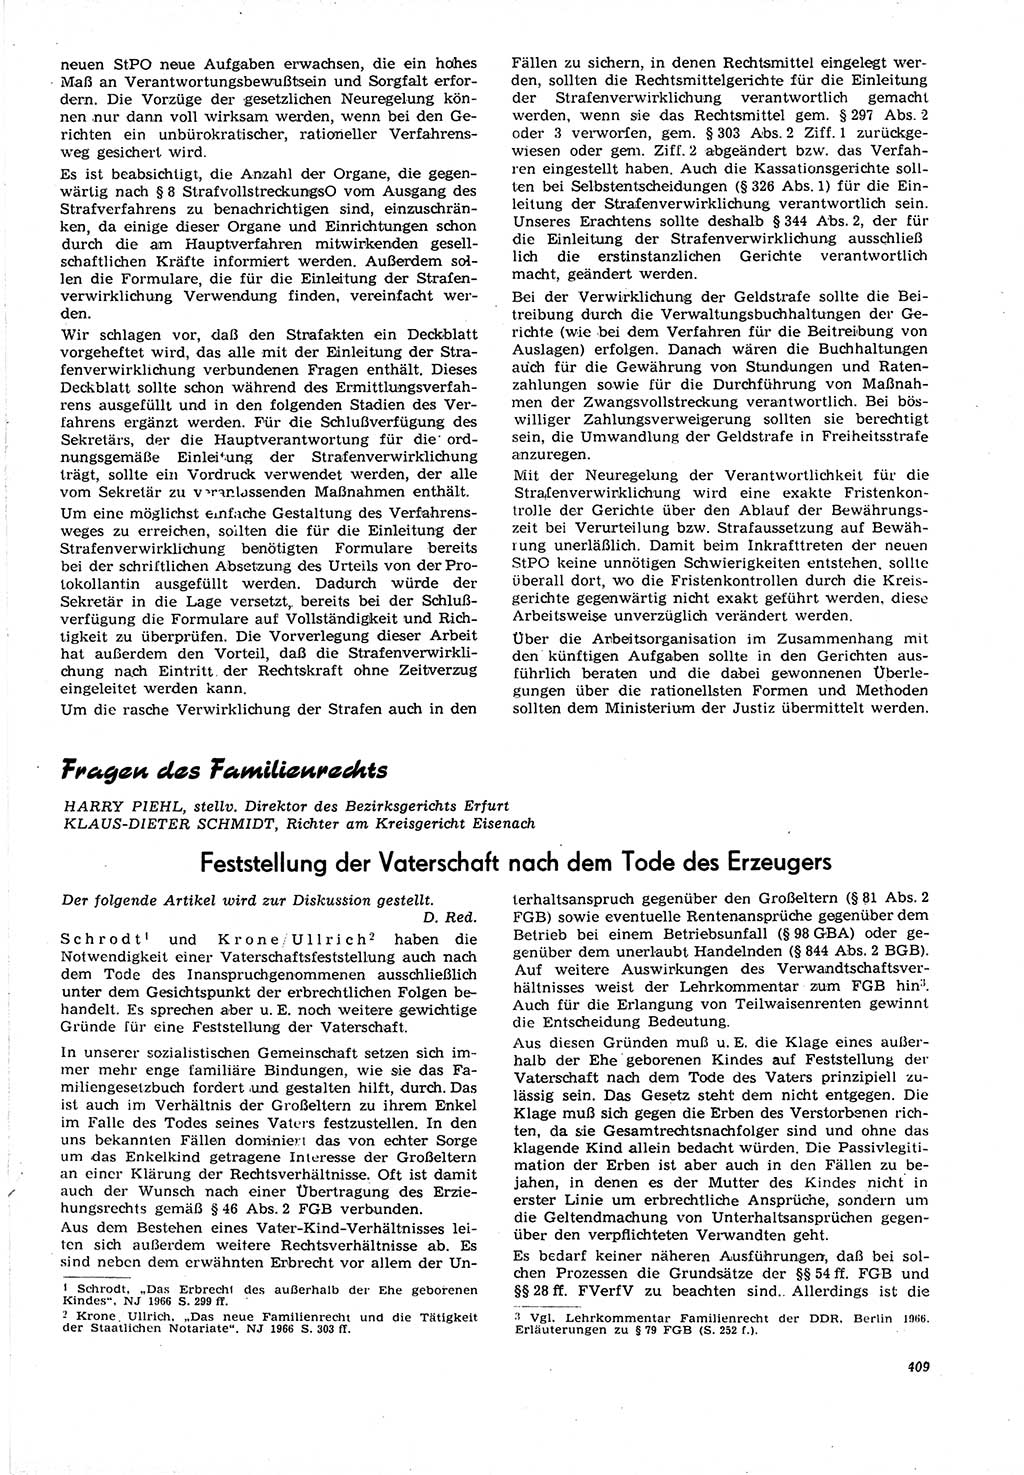 Neue Justiz (NJ), Zeitschrift für Recht und Rechtswissenschaft [Deutsche Demokratische Republik (DDR)], 21. Jahrgang 1967, Seite 409 (NJ DDR 1967, S. 409)